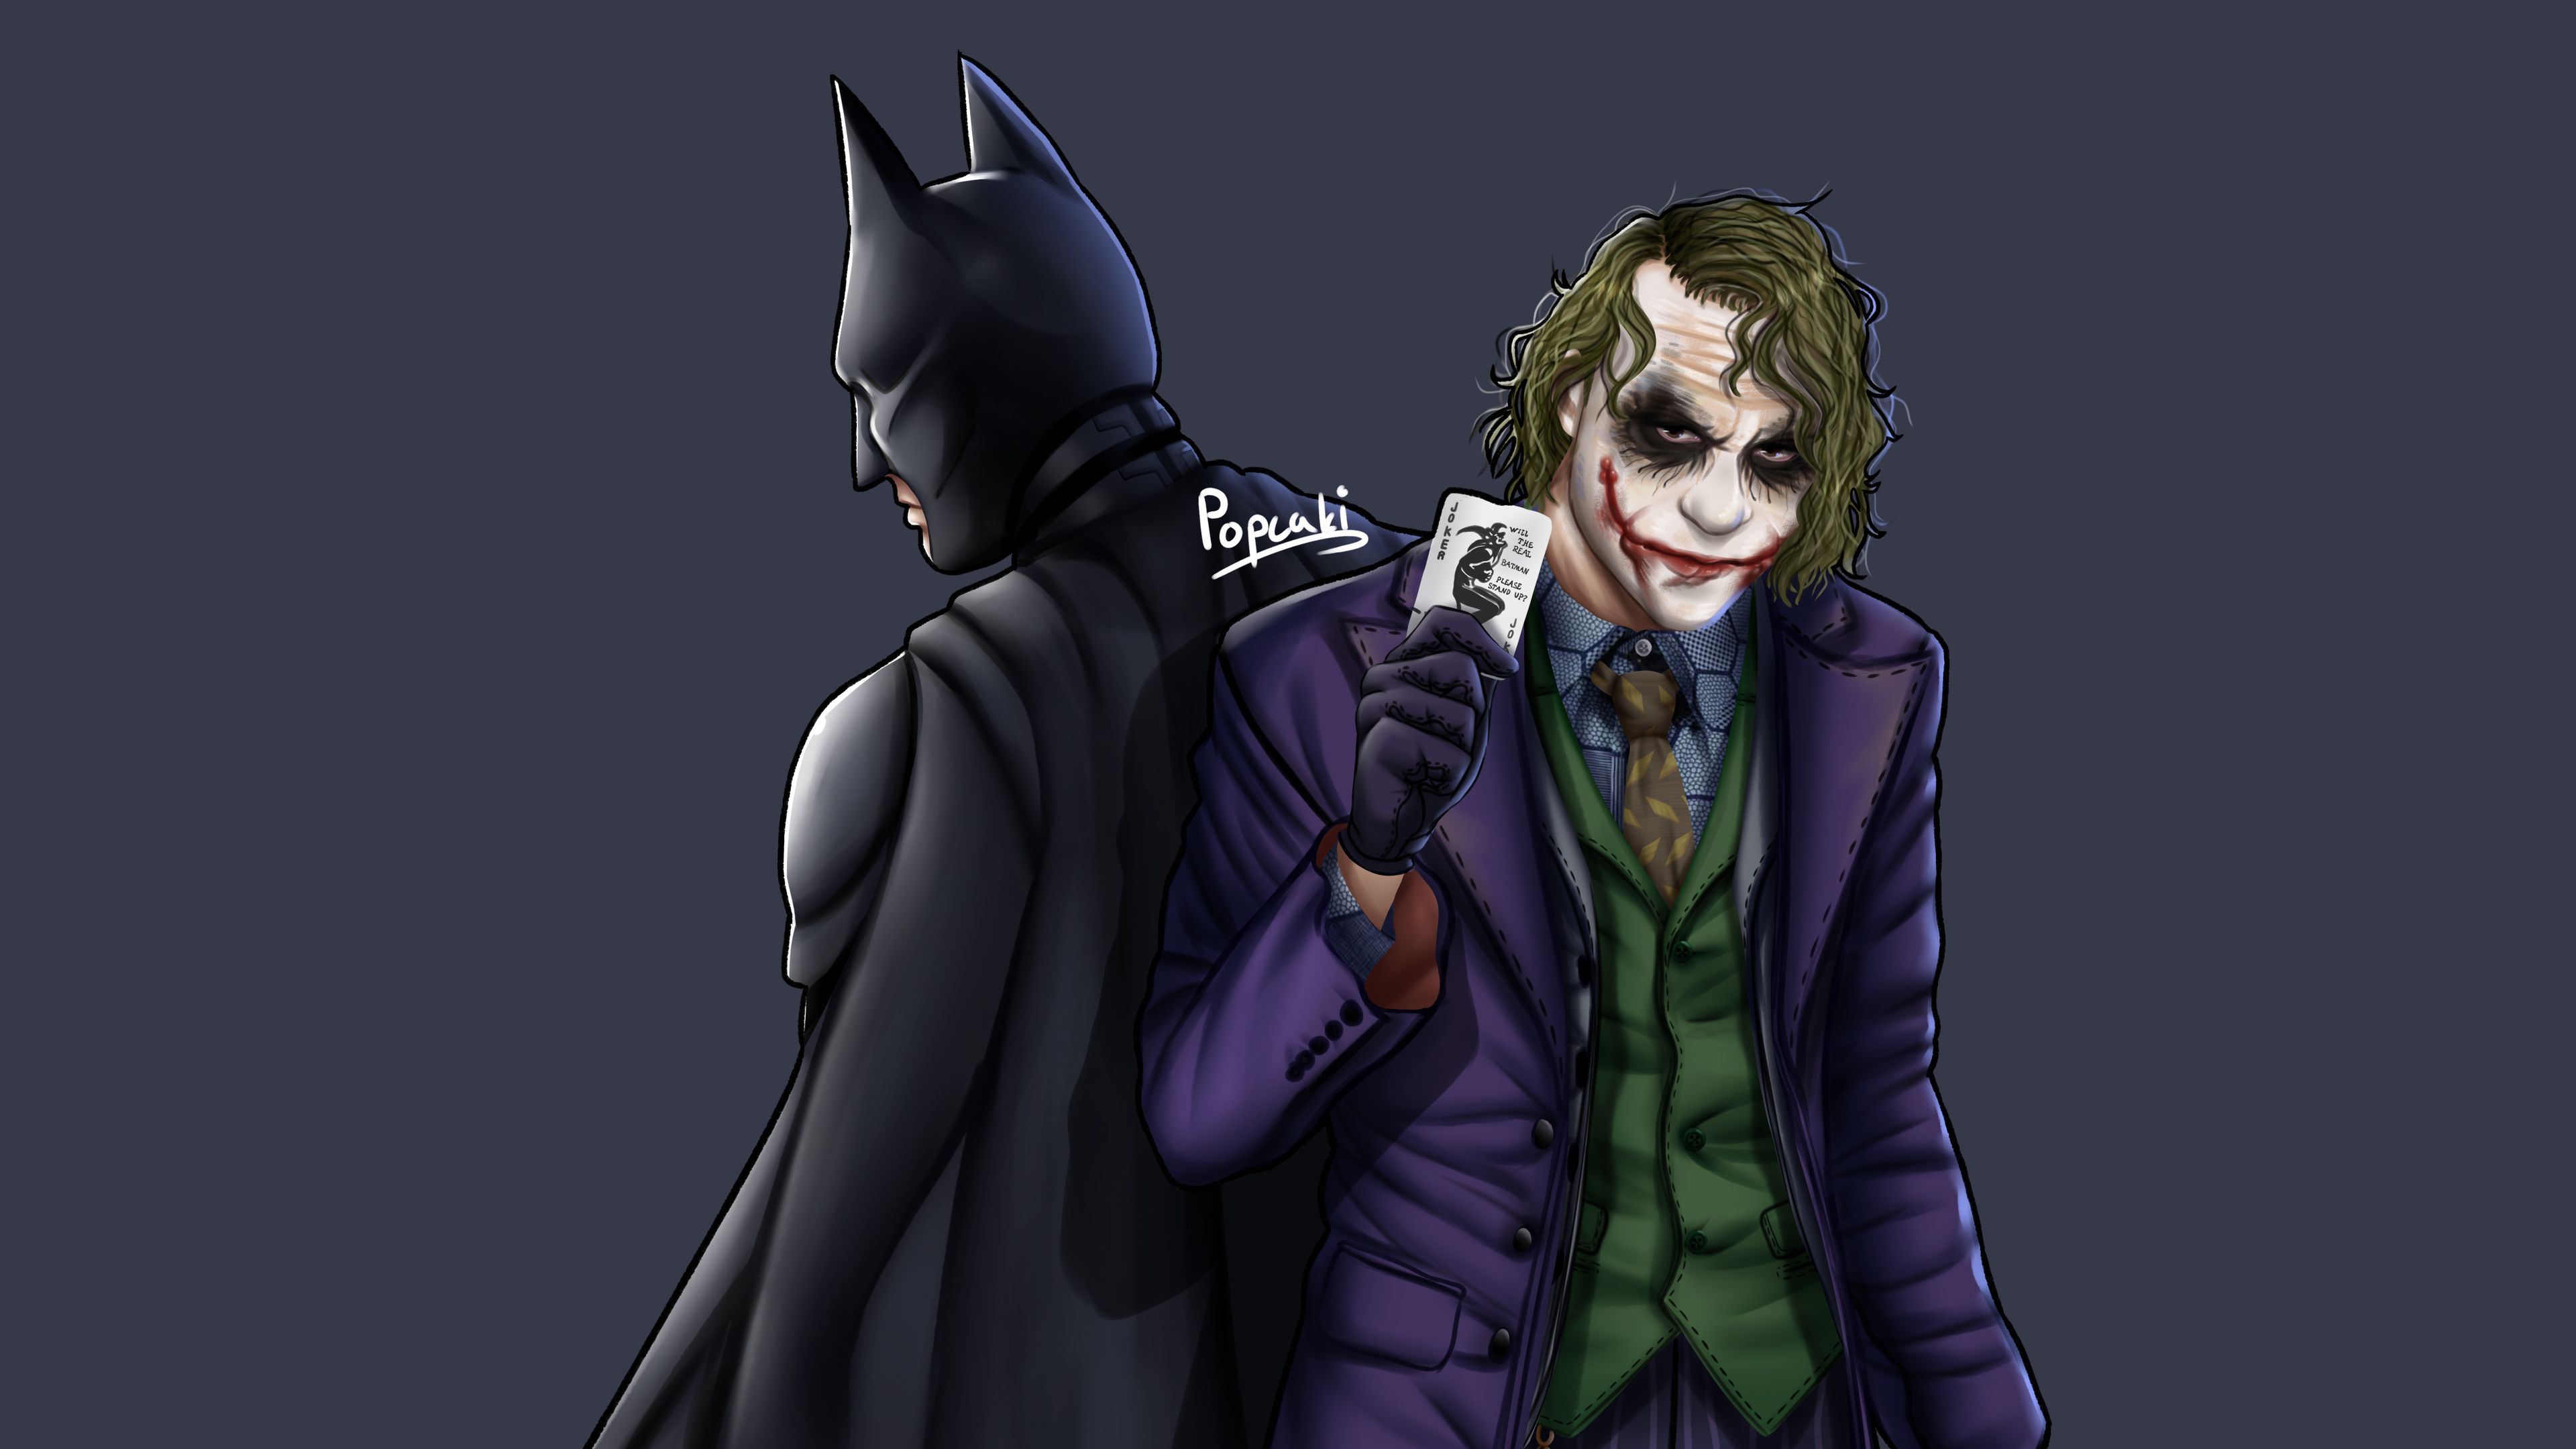 Cool Batman And Joker Wallpaper